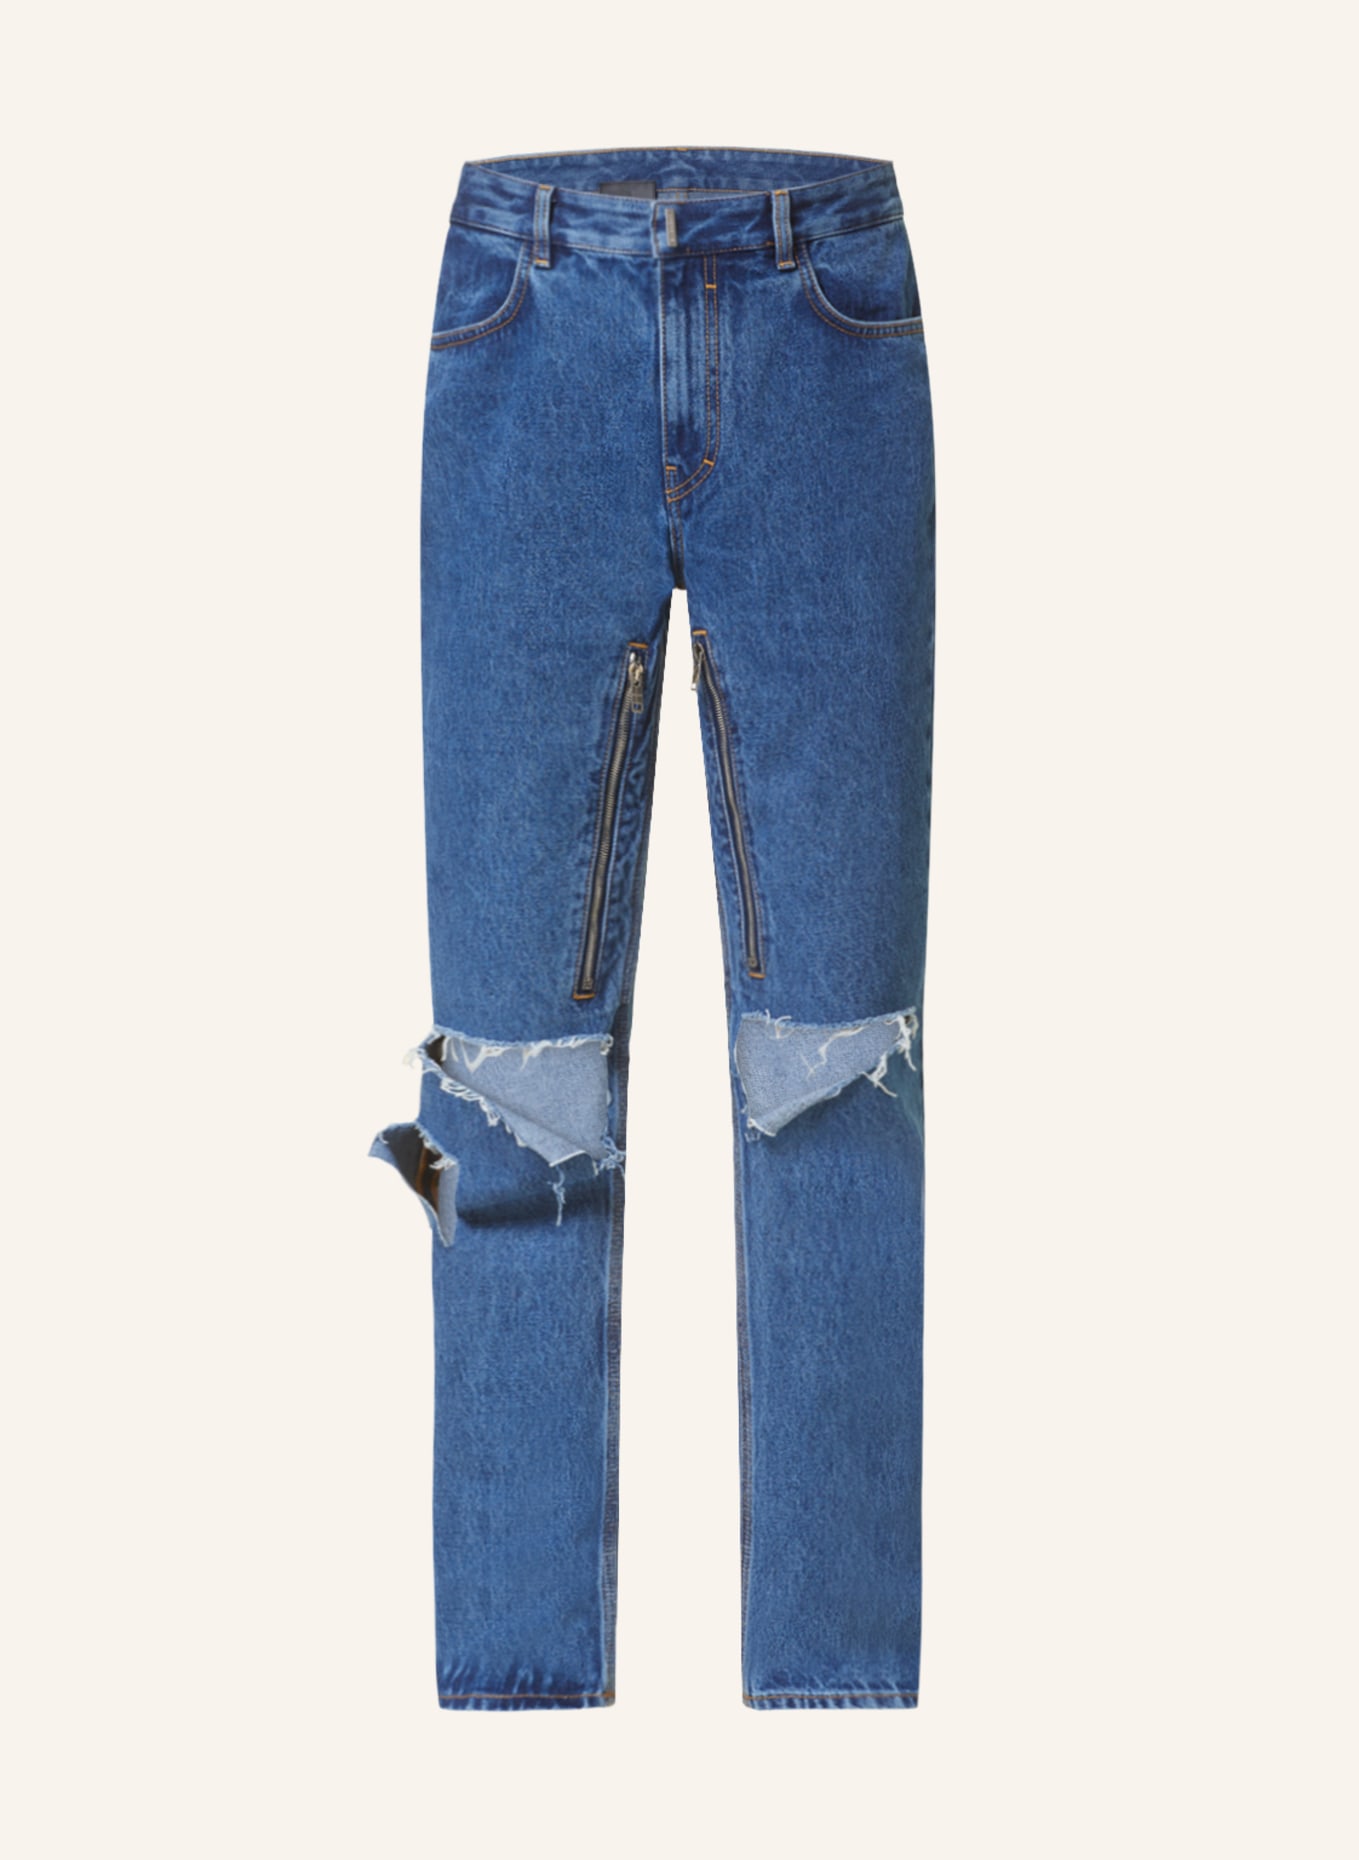 GIVENCHY Jeans, Farbe: 415 INDIGO BLUE (Bild 1)